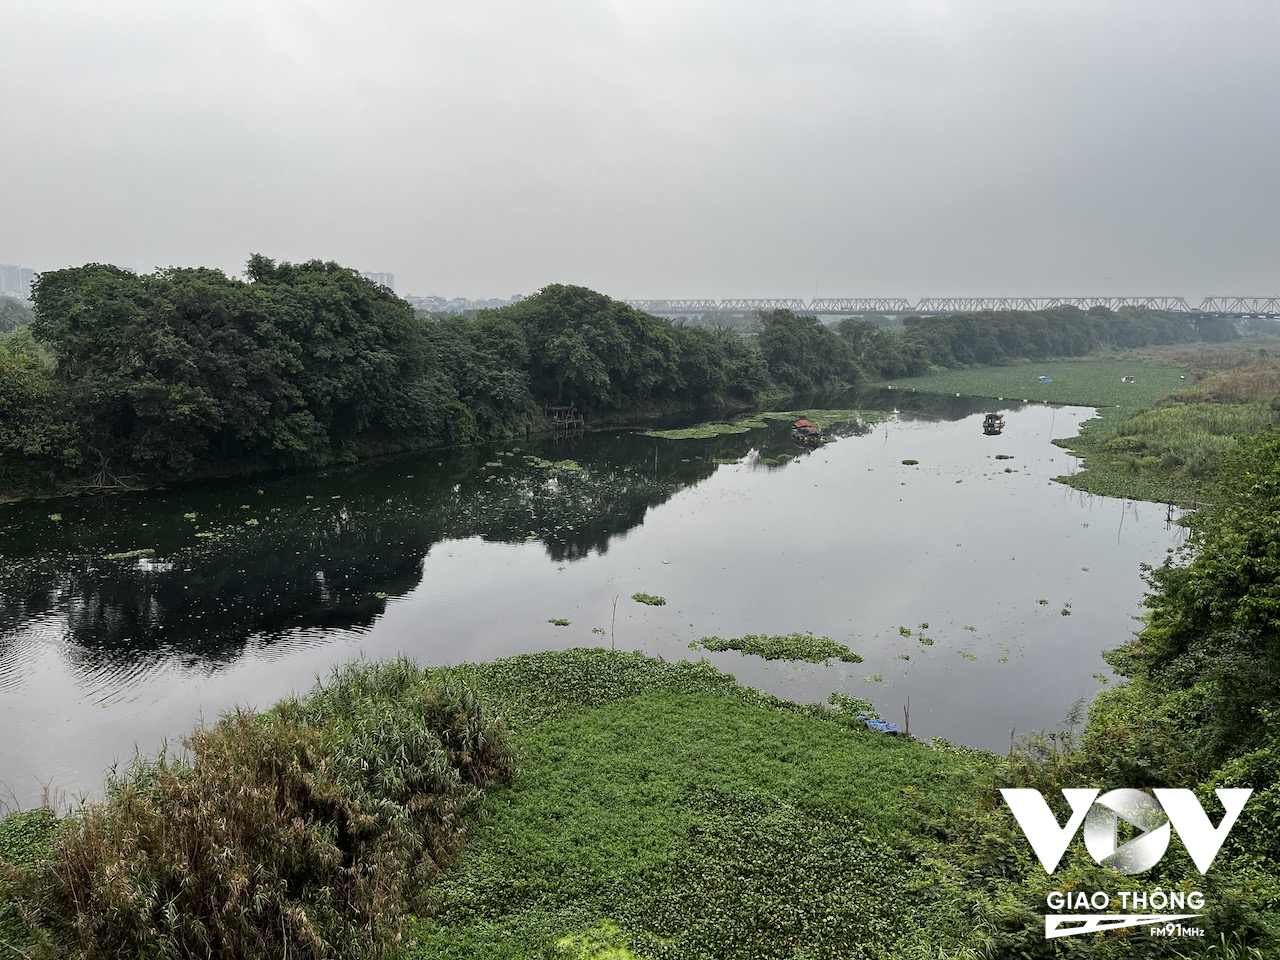 Nước thải được xả trực tiếp xuống sông khiến tình trạng ô nhiễm của sông Hồng đoạn qua thành phố Hà Nội ô nhiễm nghiêm trọng